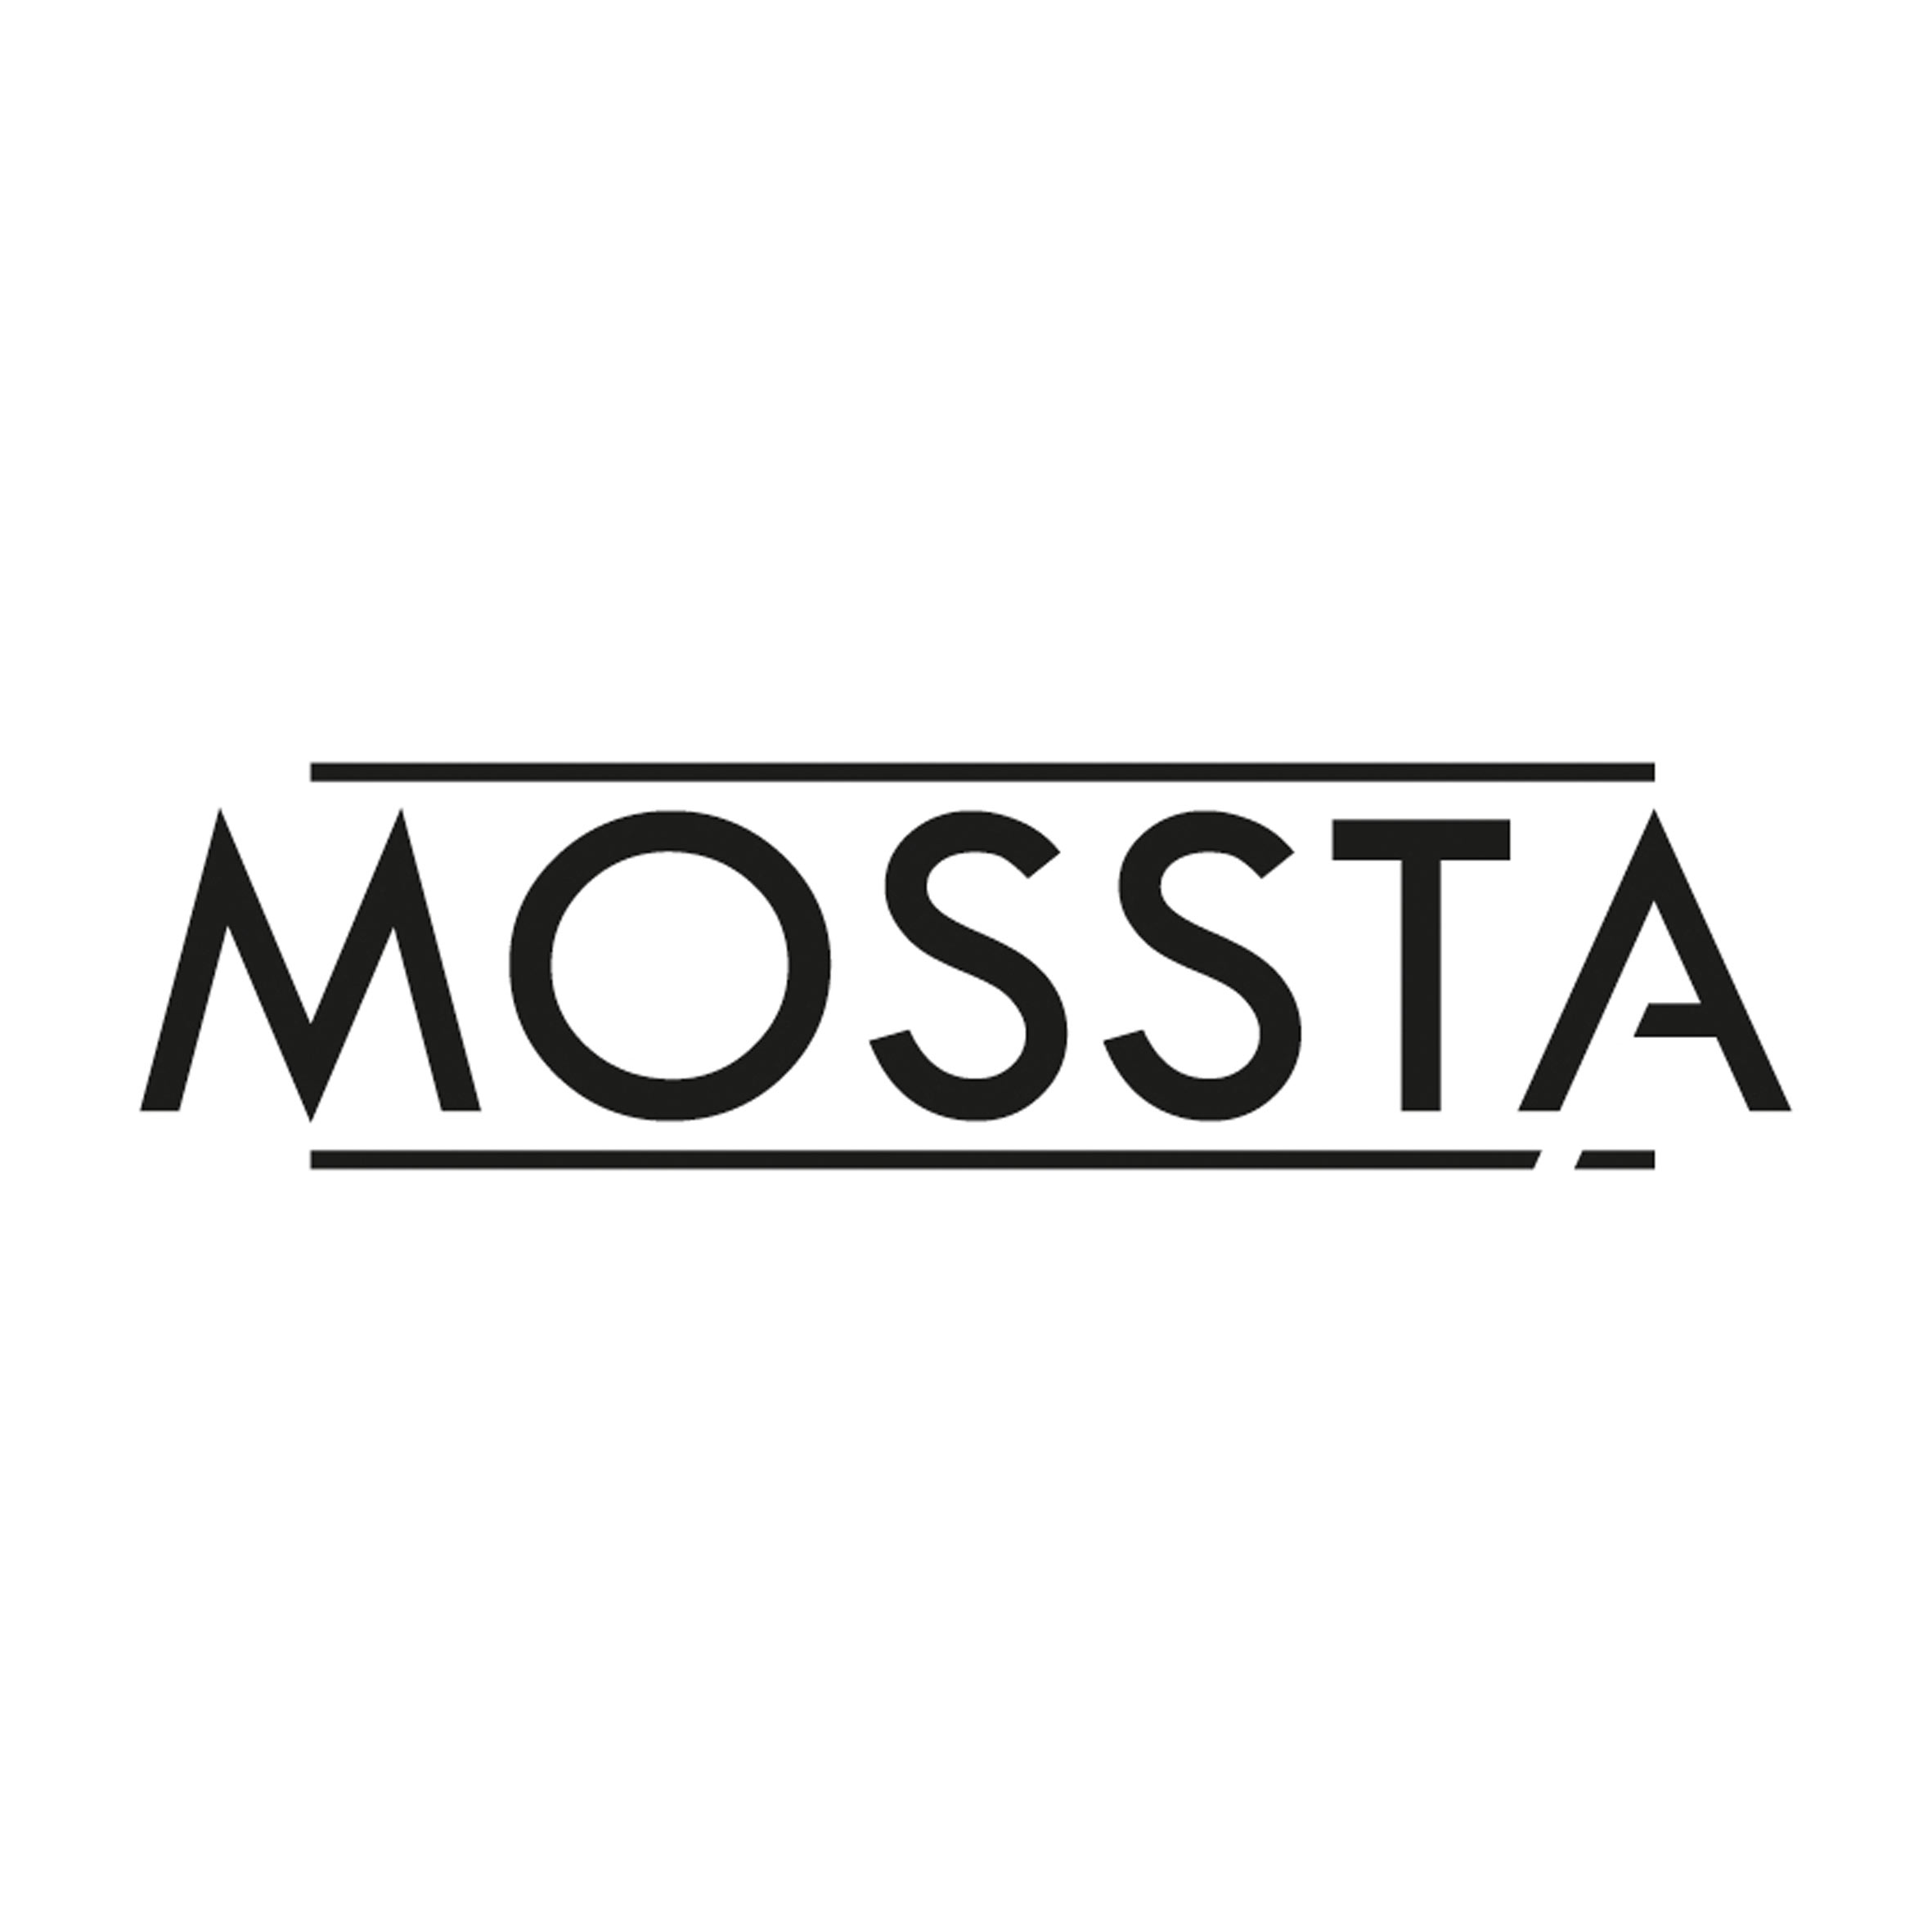 MOSSTA